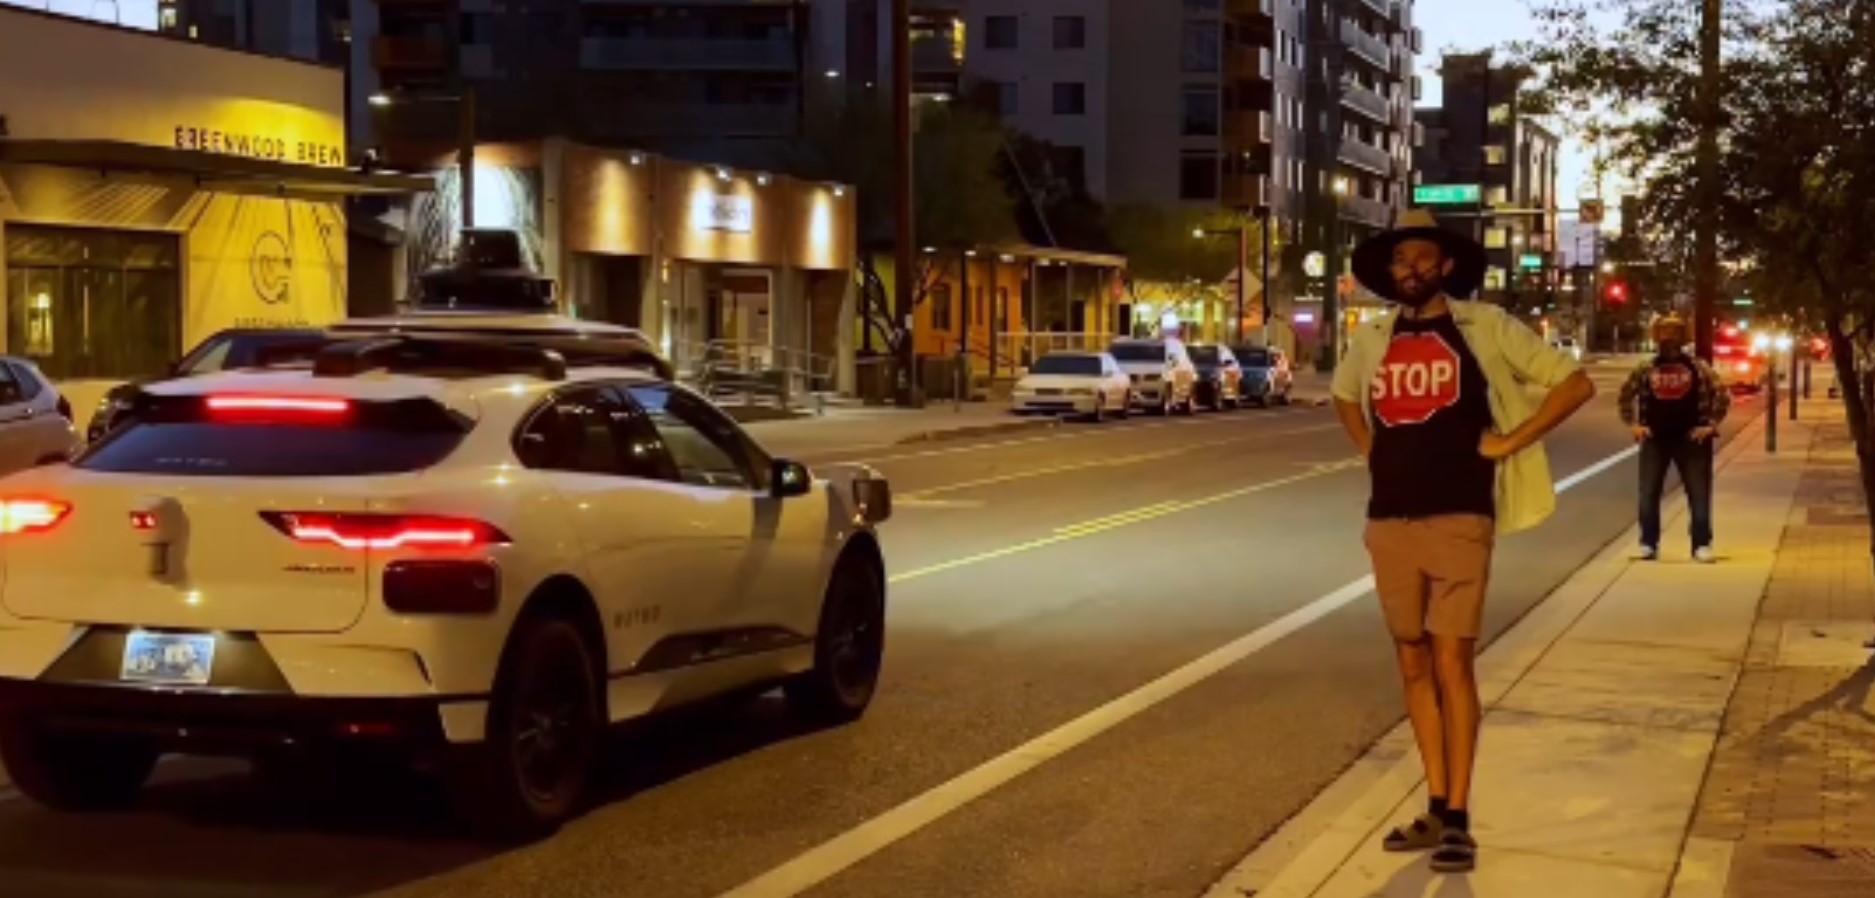 Мужчина в майке с изображением знака STOP оснанавливает беспилотные машины на улице